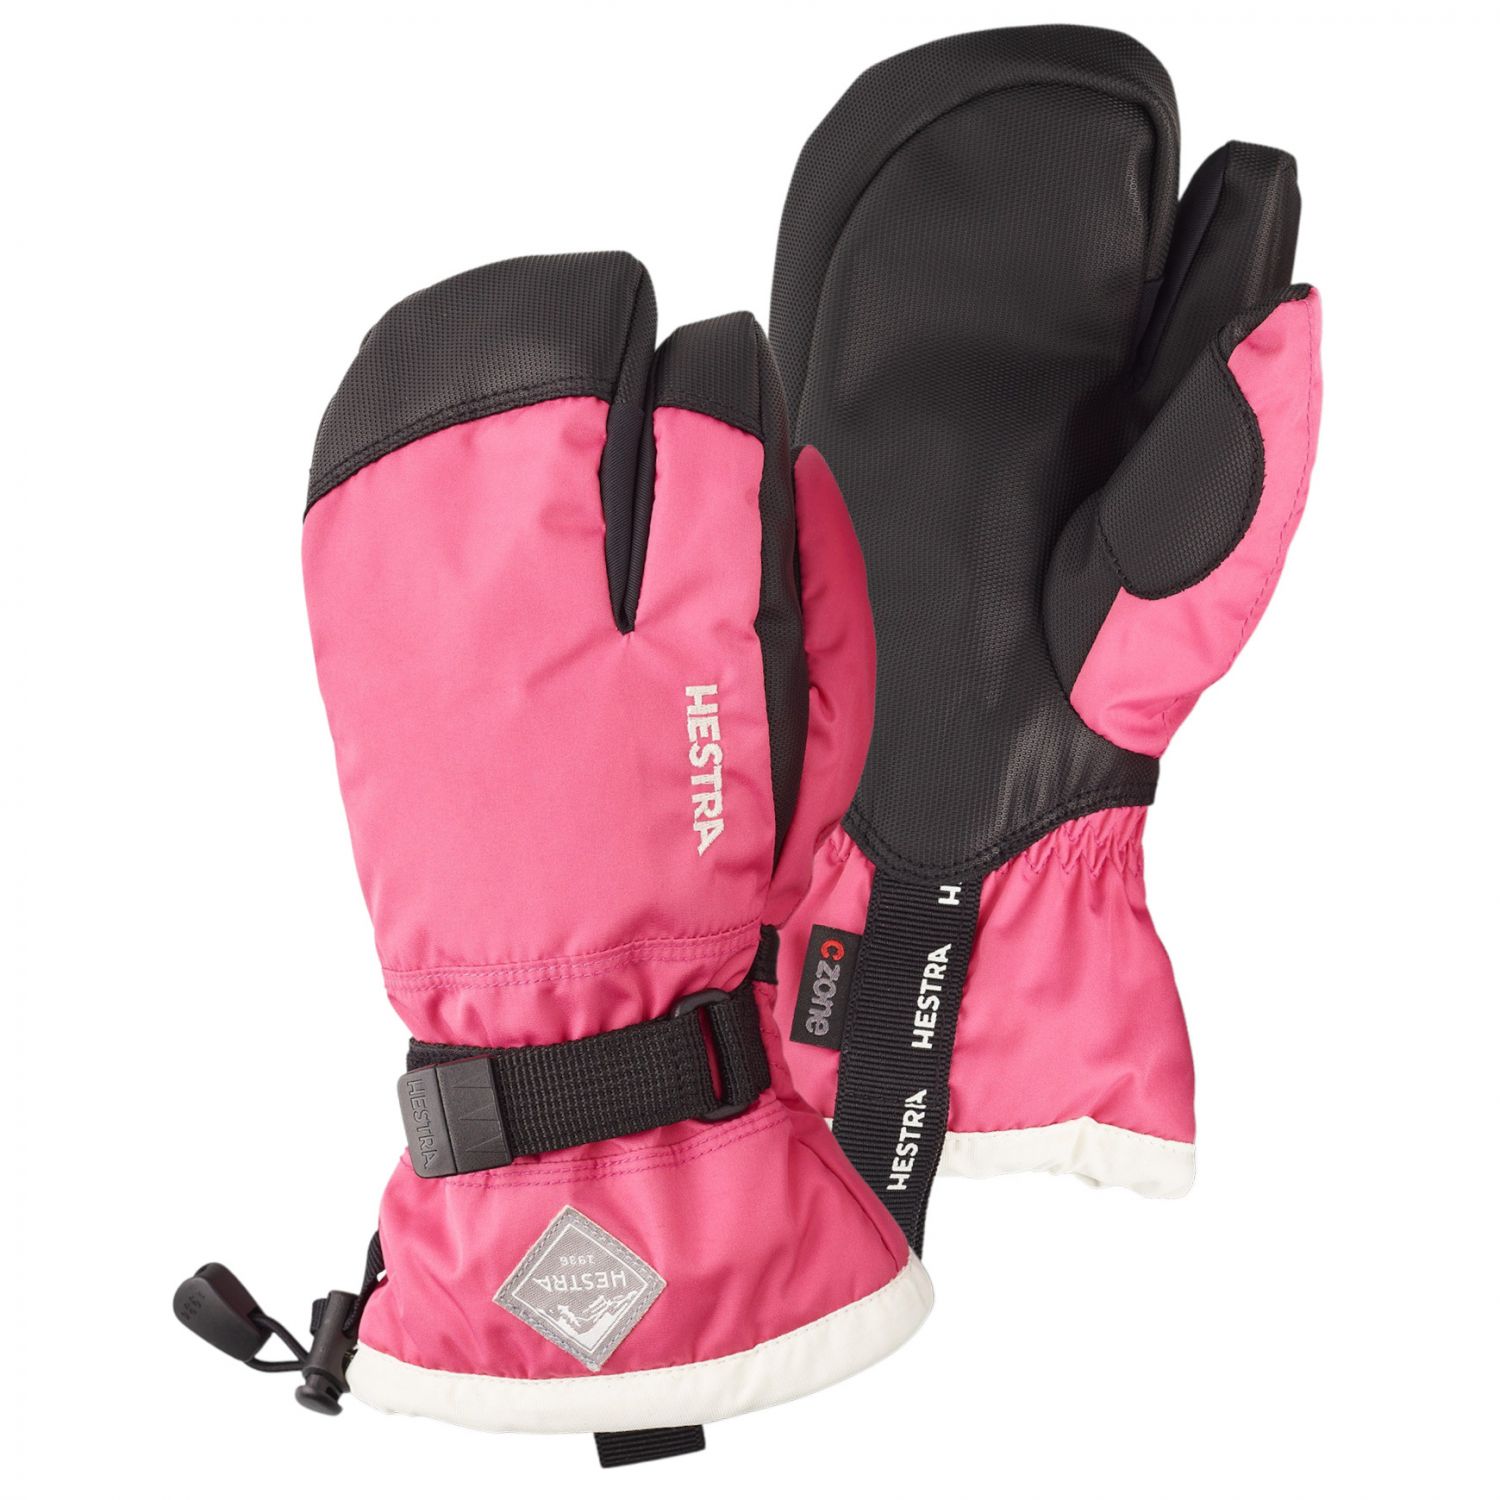 Se Hestra Gauntlet 3-finger skihandsker, junior, pink hos AktivVinter.dk